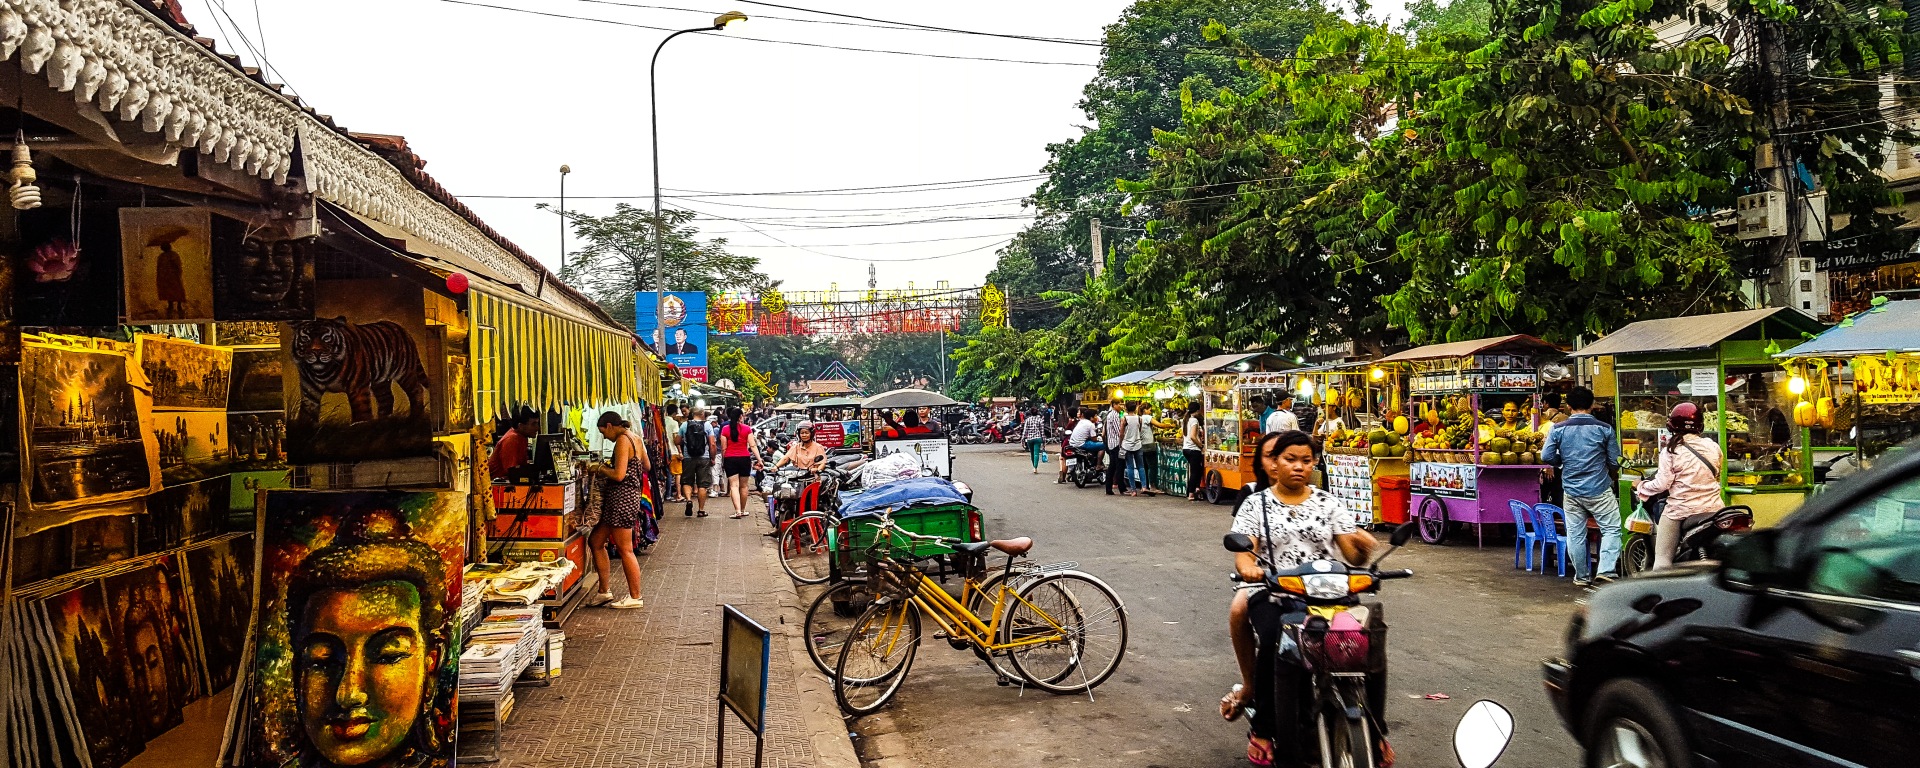 Siem Reap, cinque mercati per comprare souvenir